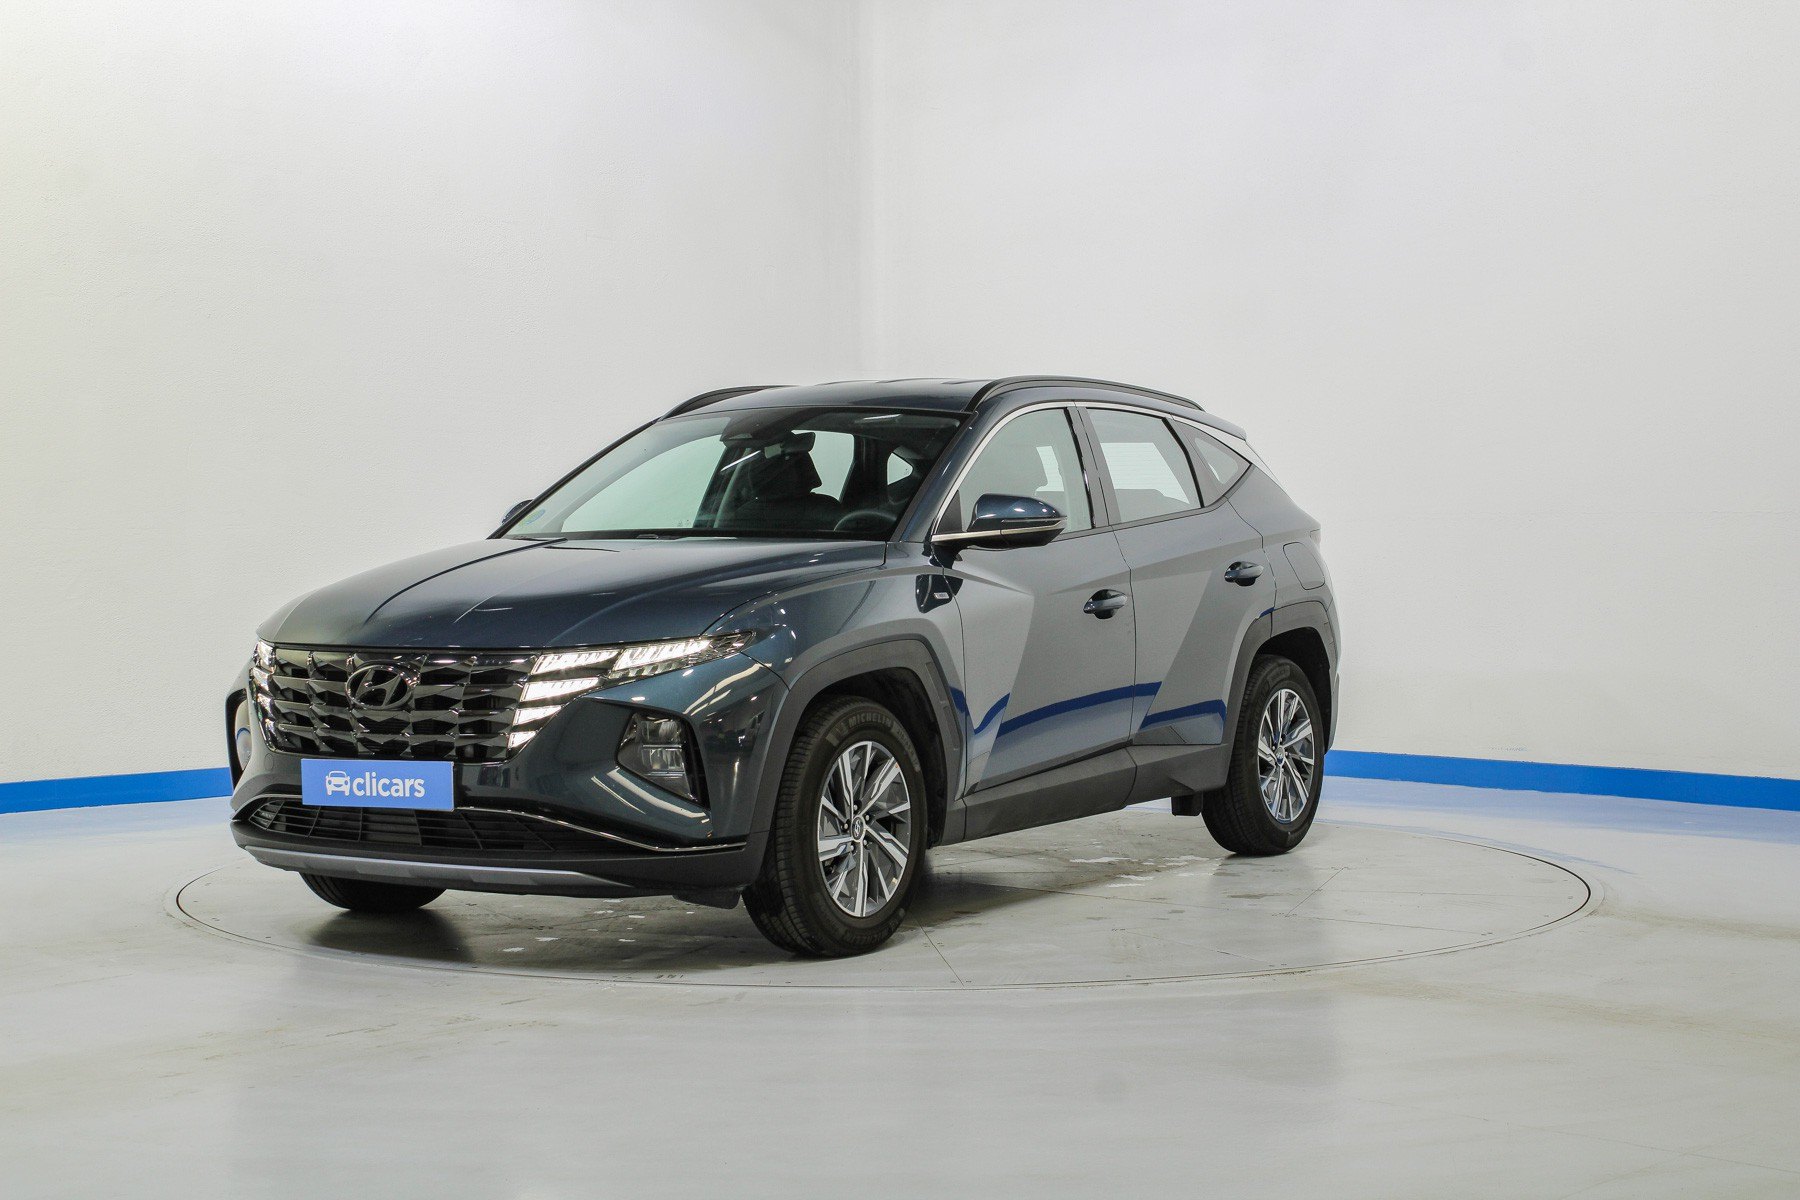 Conoce al Hyundai Tucson, el coche más vendido en diciembre de 2021